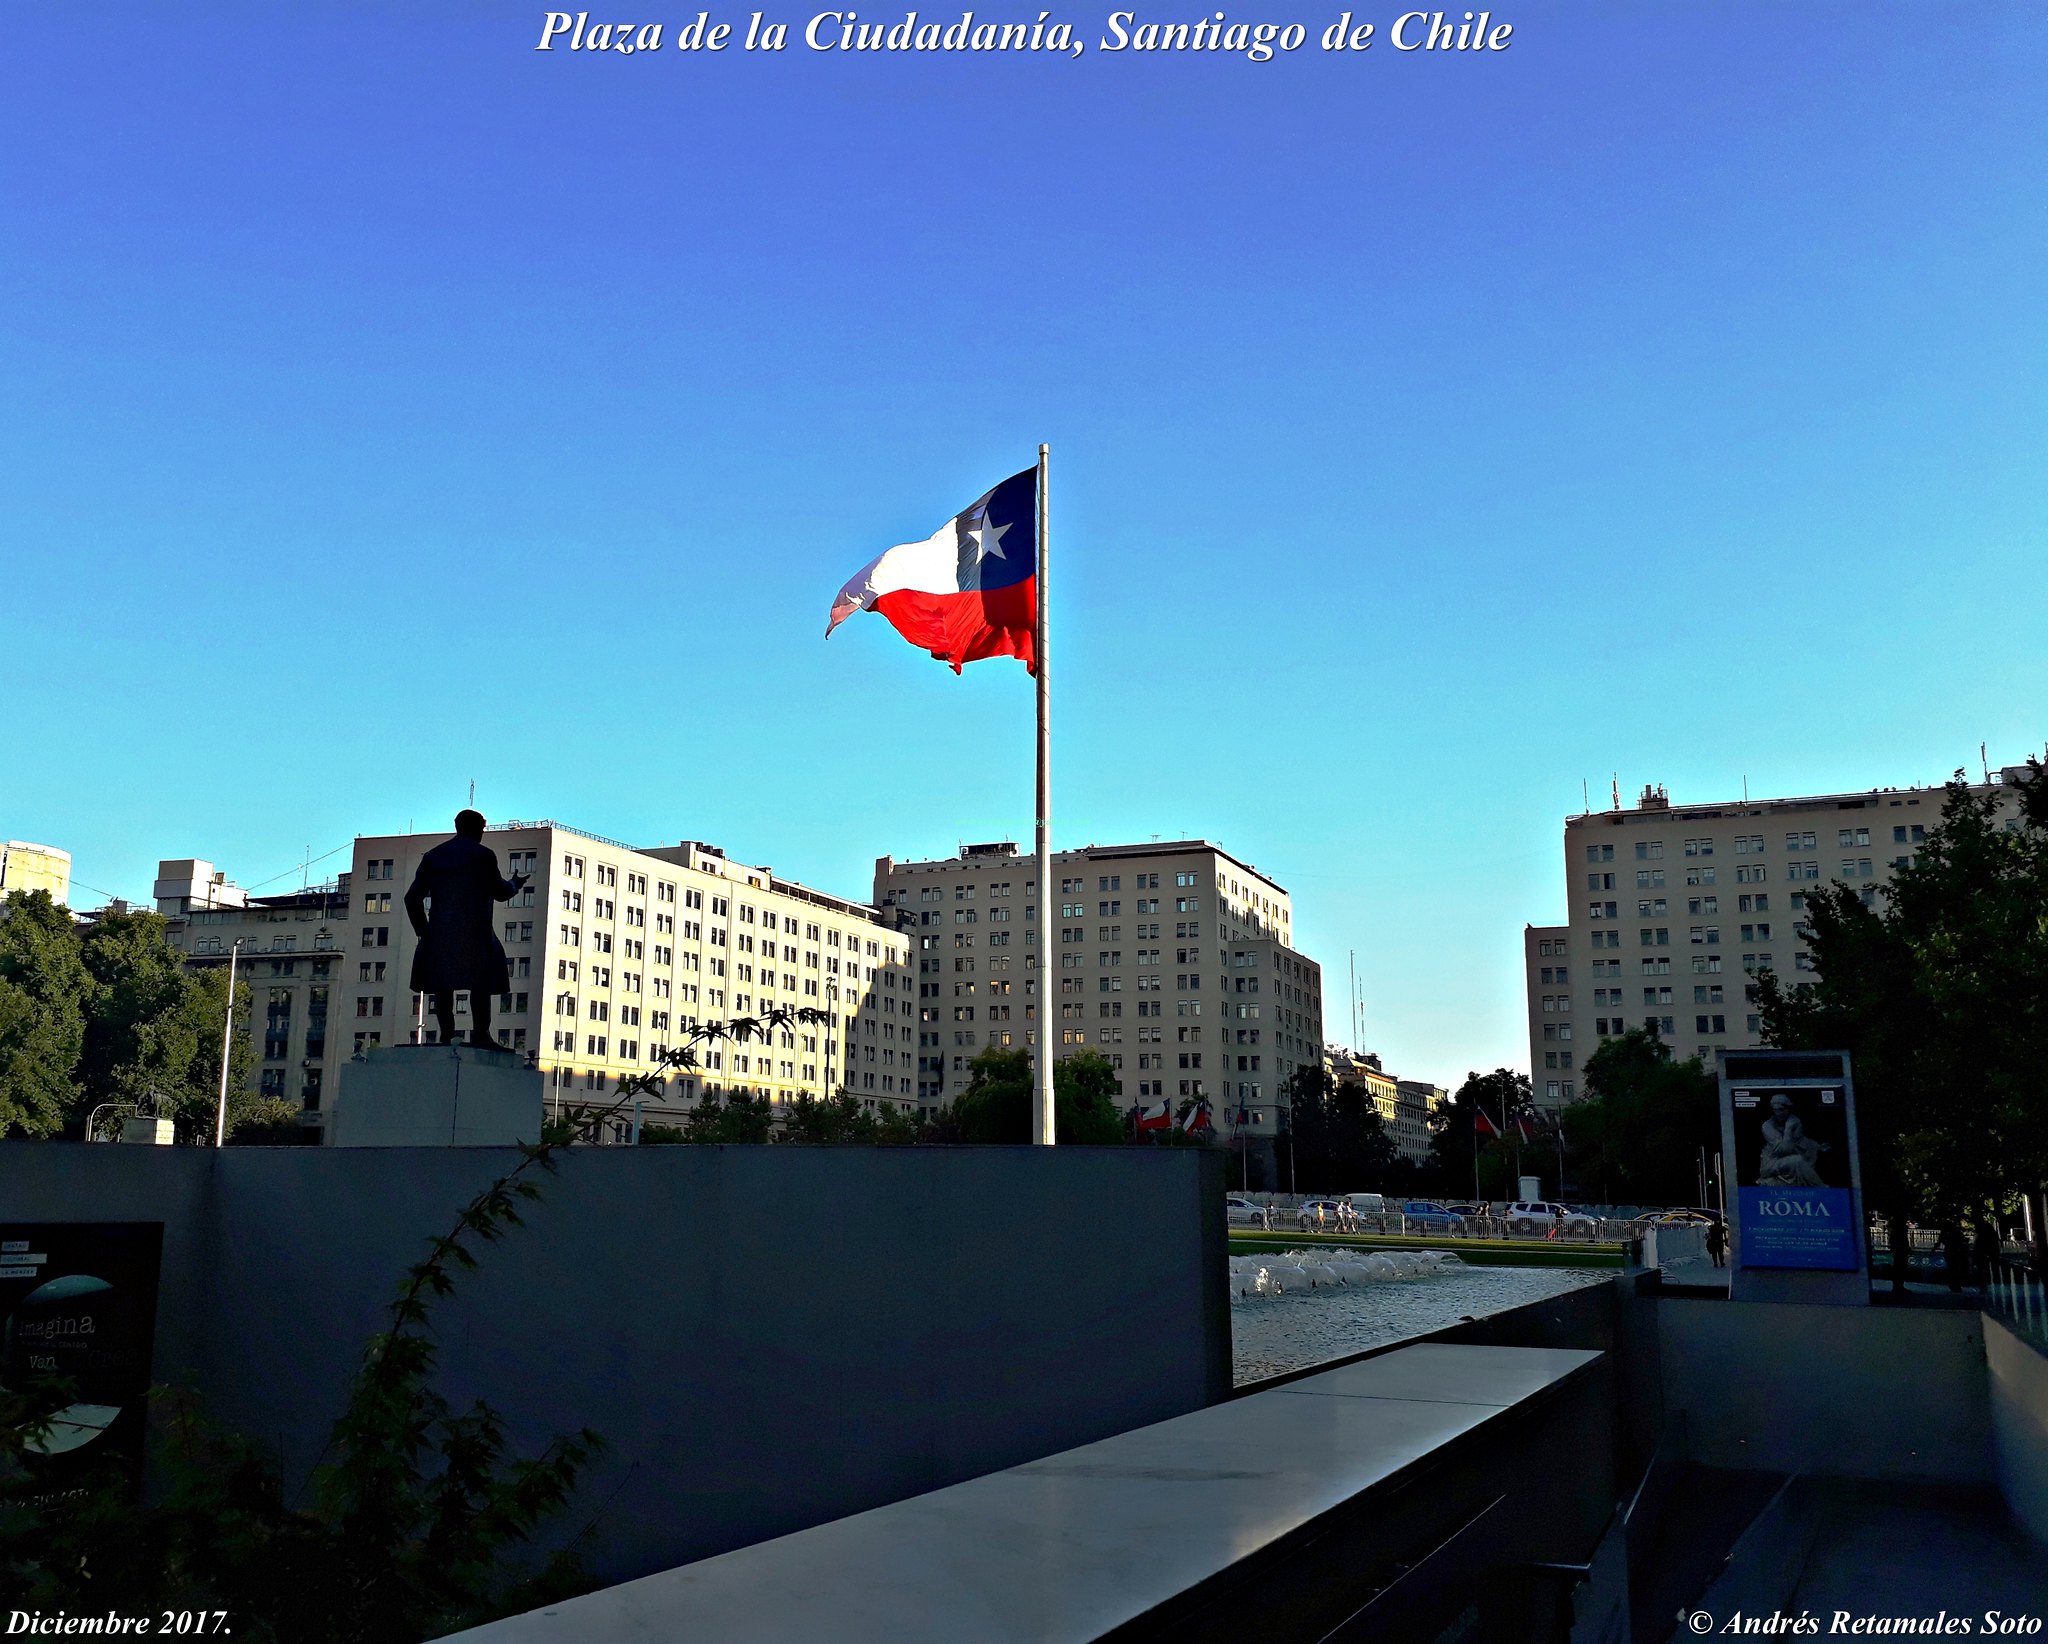 Plaza de la Ciudadanía, Santiago de Chile, Diciembre 2017